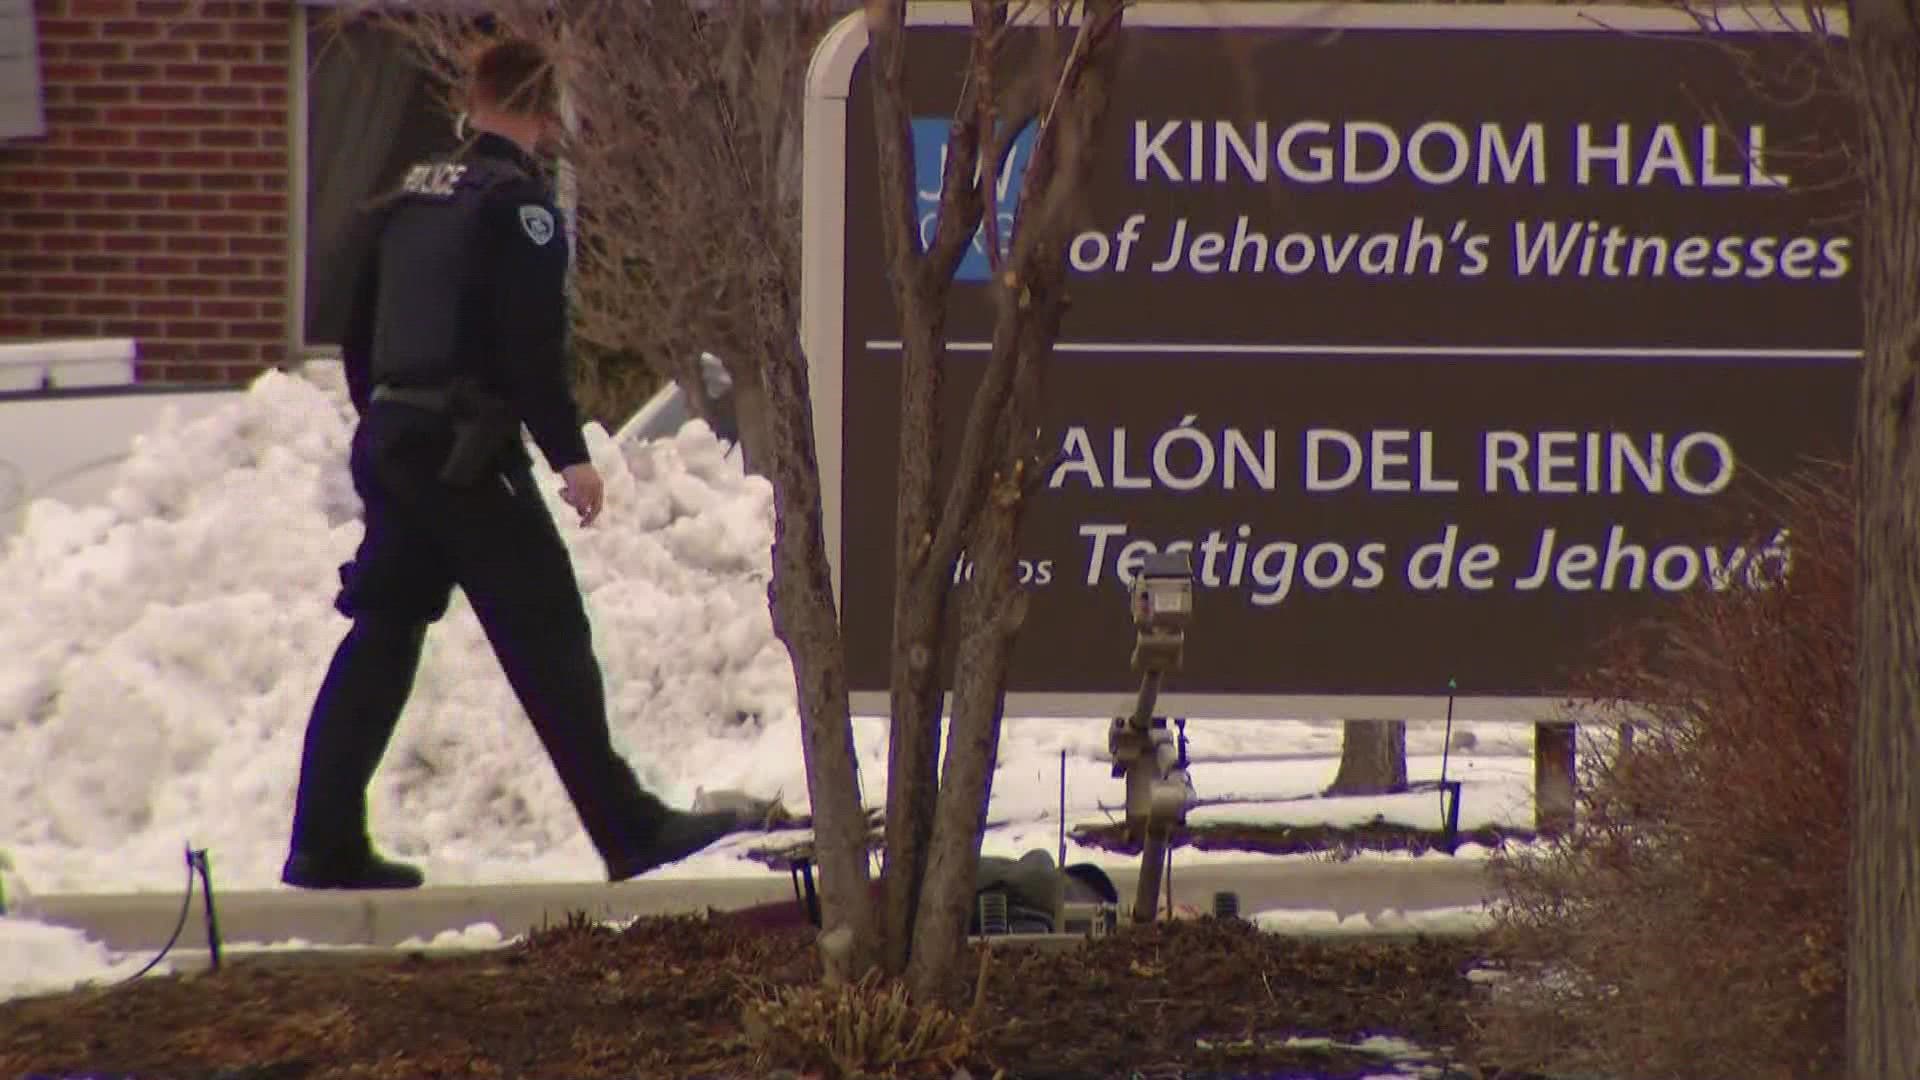 Policía investiga homicidio en Salón del Reino de los Testigos de Jehová |  